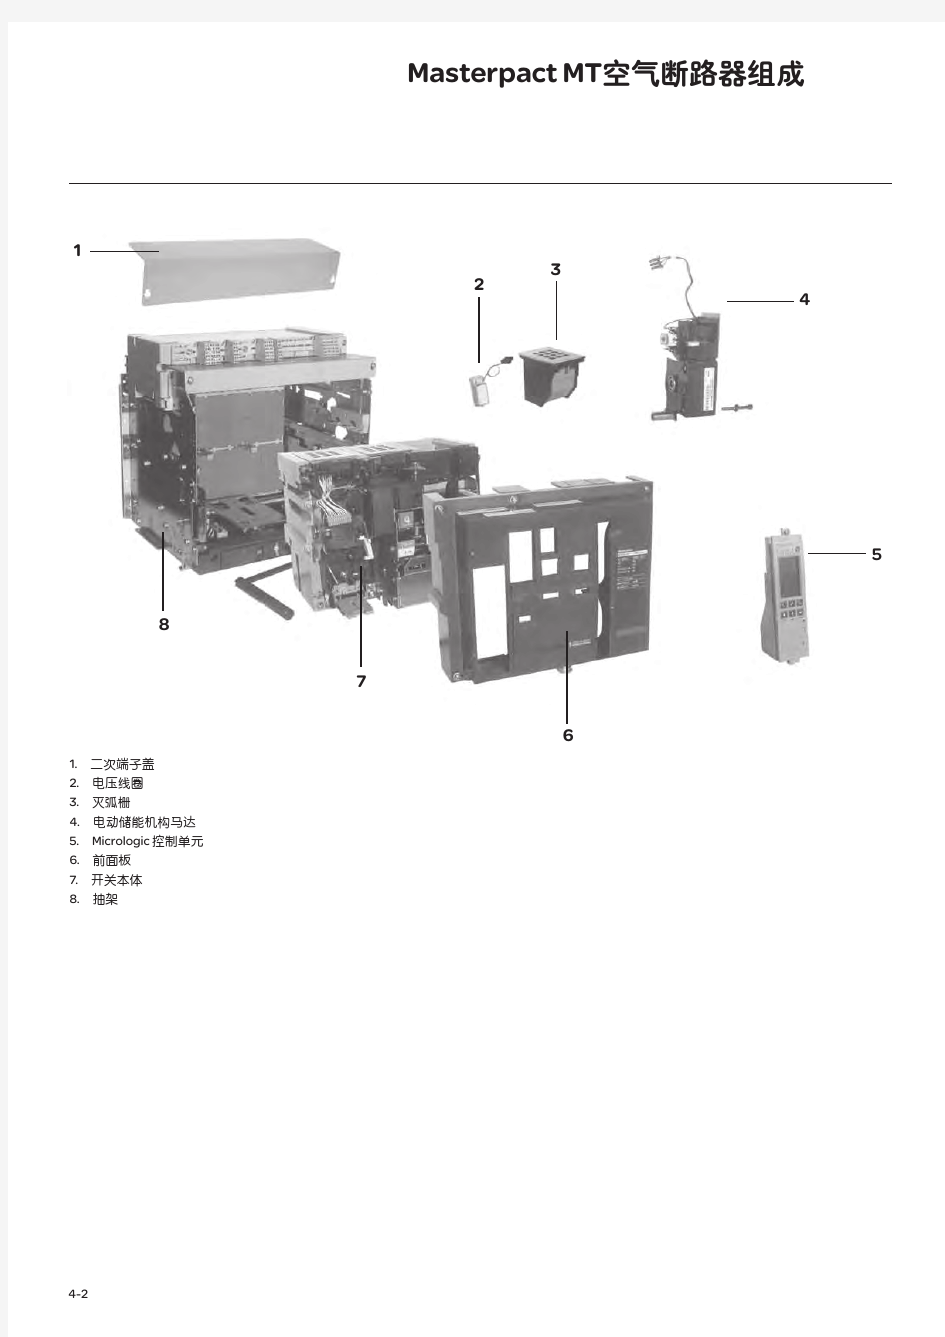 施耐德低压电器选型手册-空气断路器选型指南